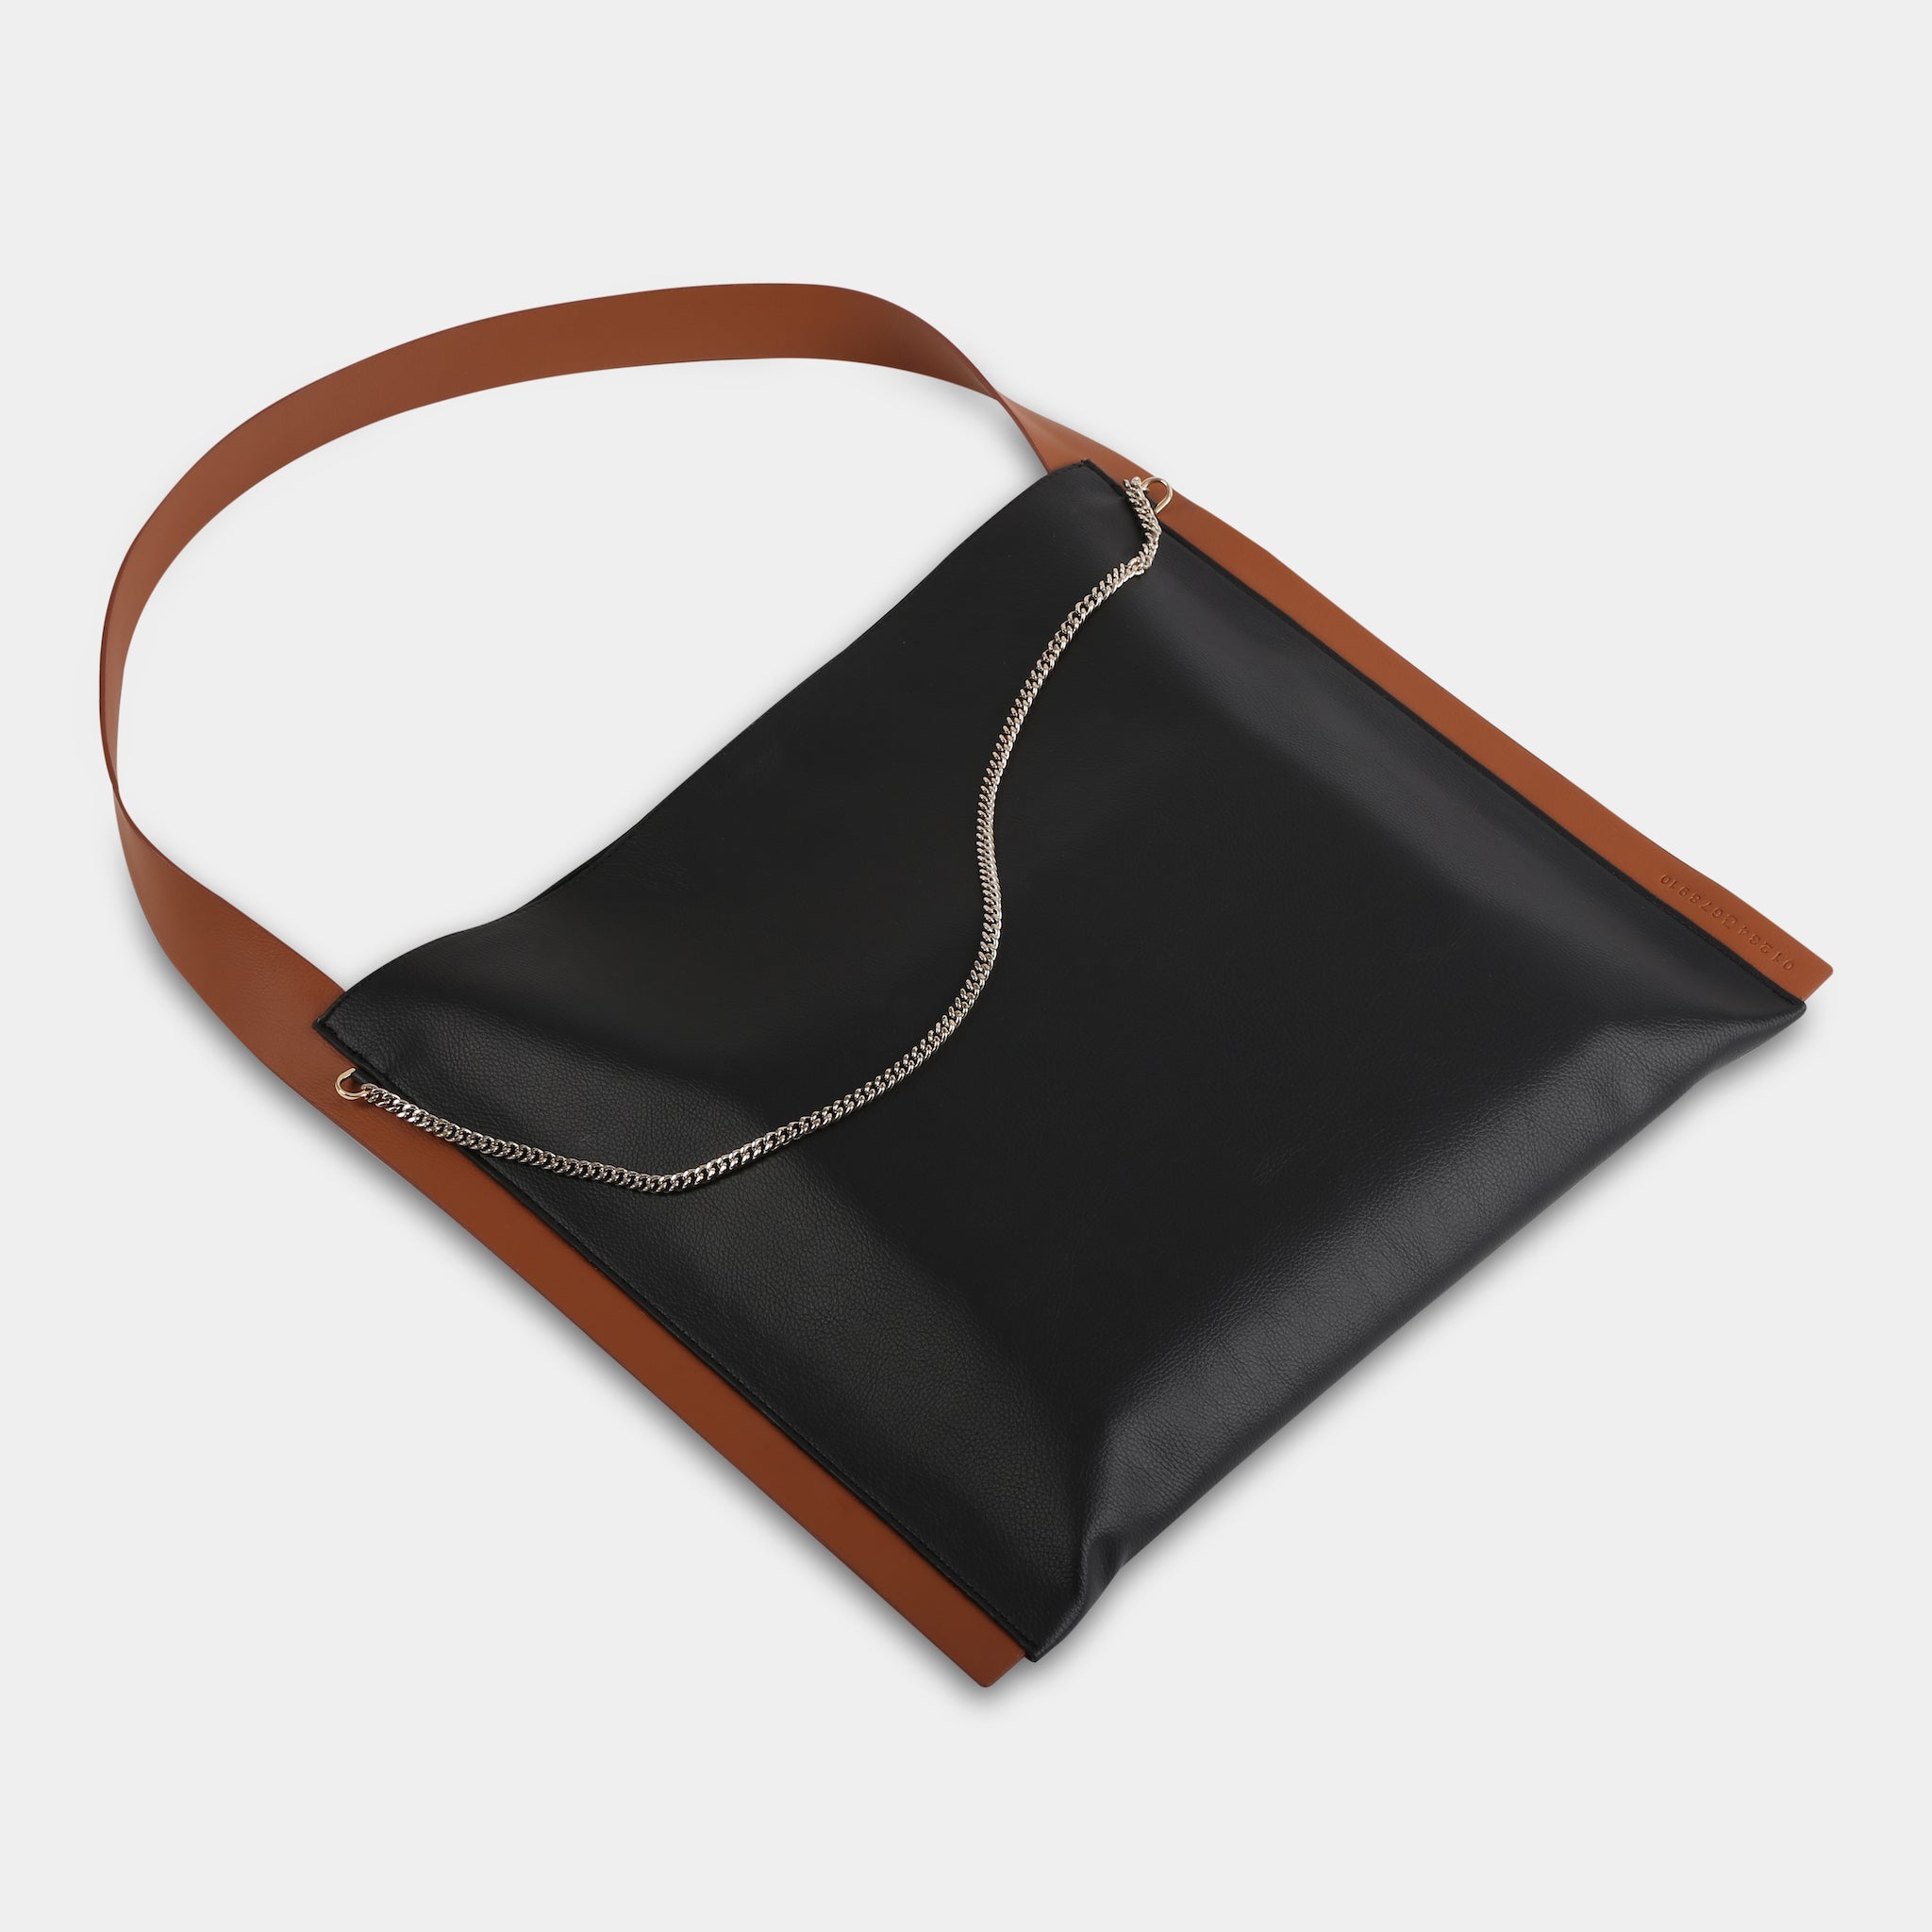 PAPER TOTE bag in black with orange strap